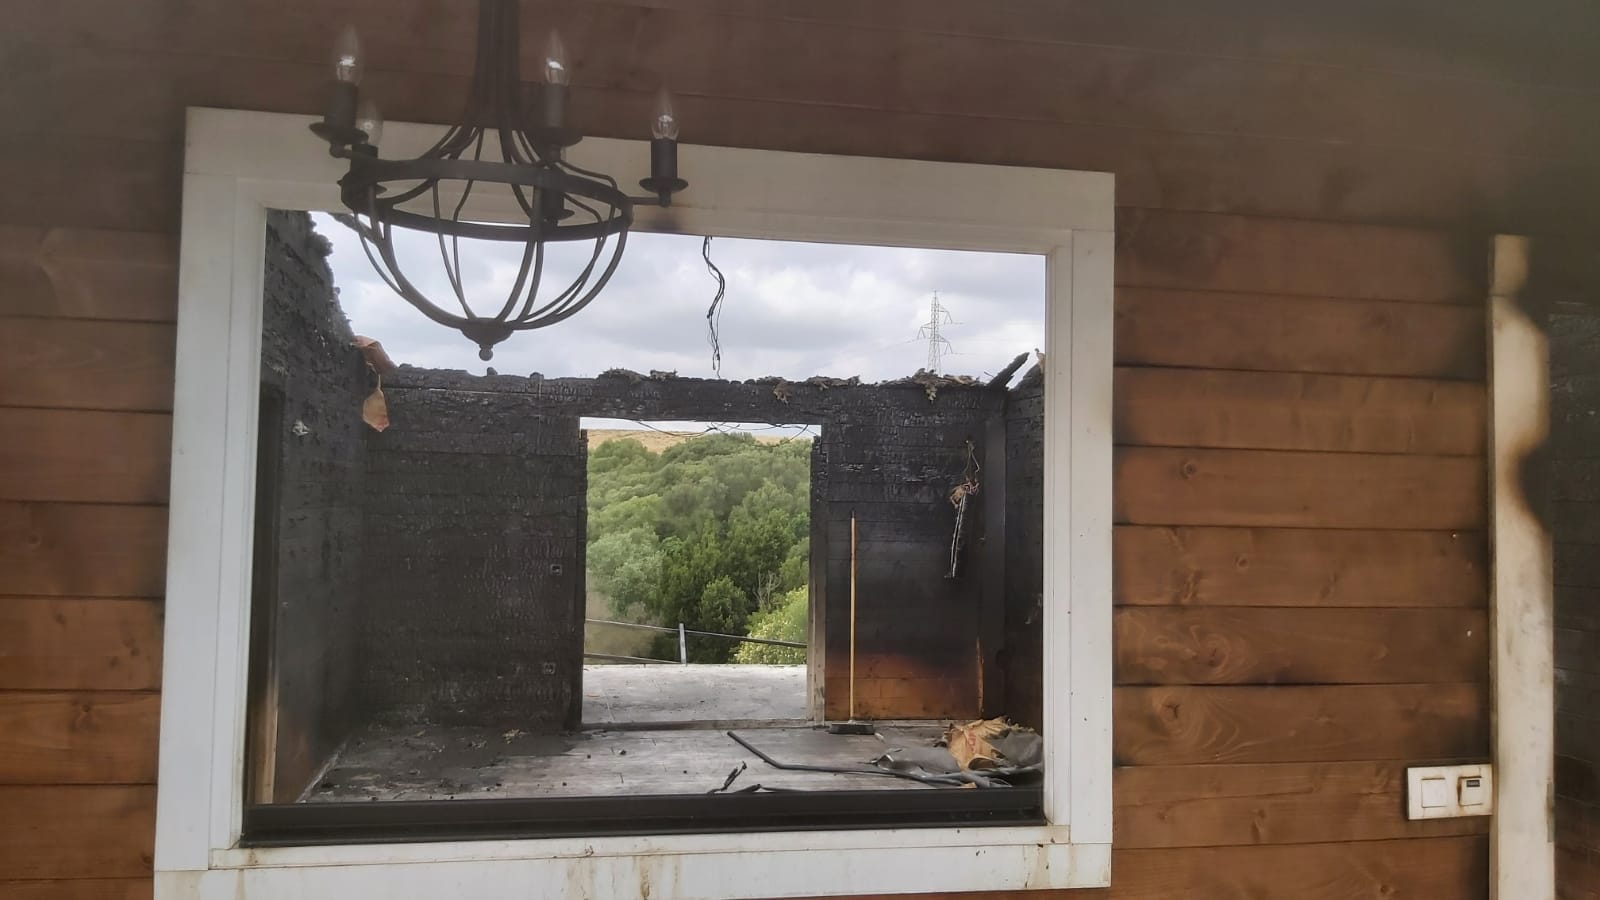 Una imagen de los efectos devastadores del fuego en una casa prefabricada de Cuartillos.